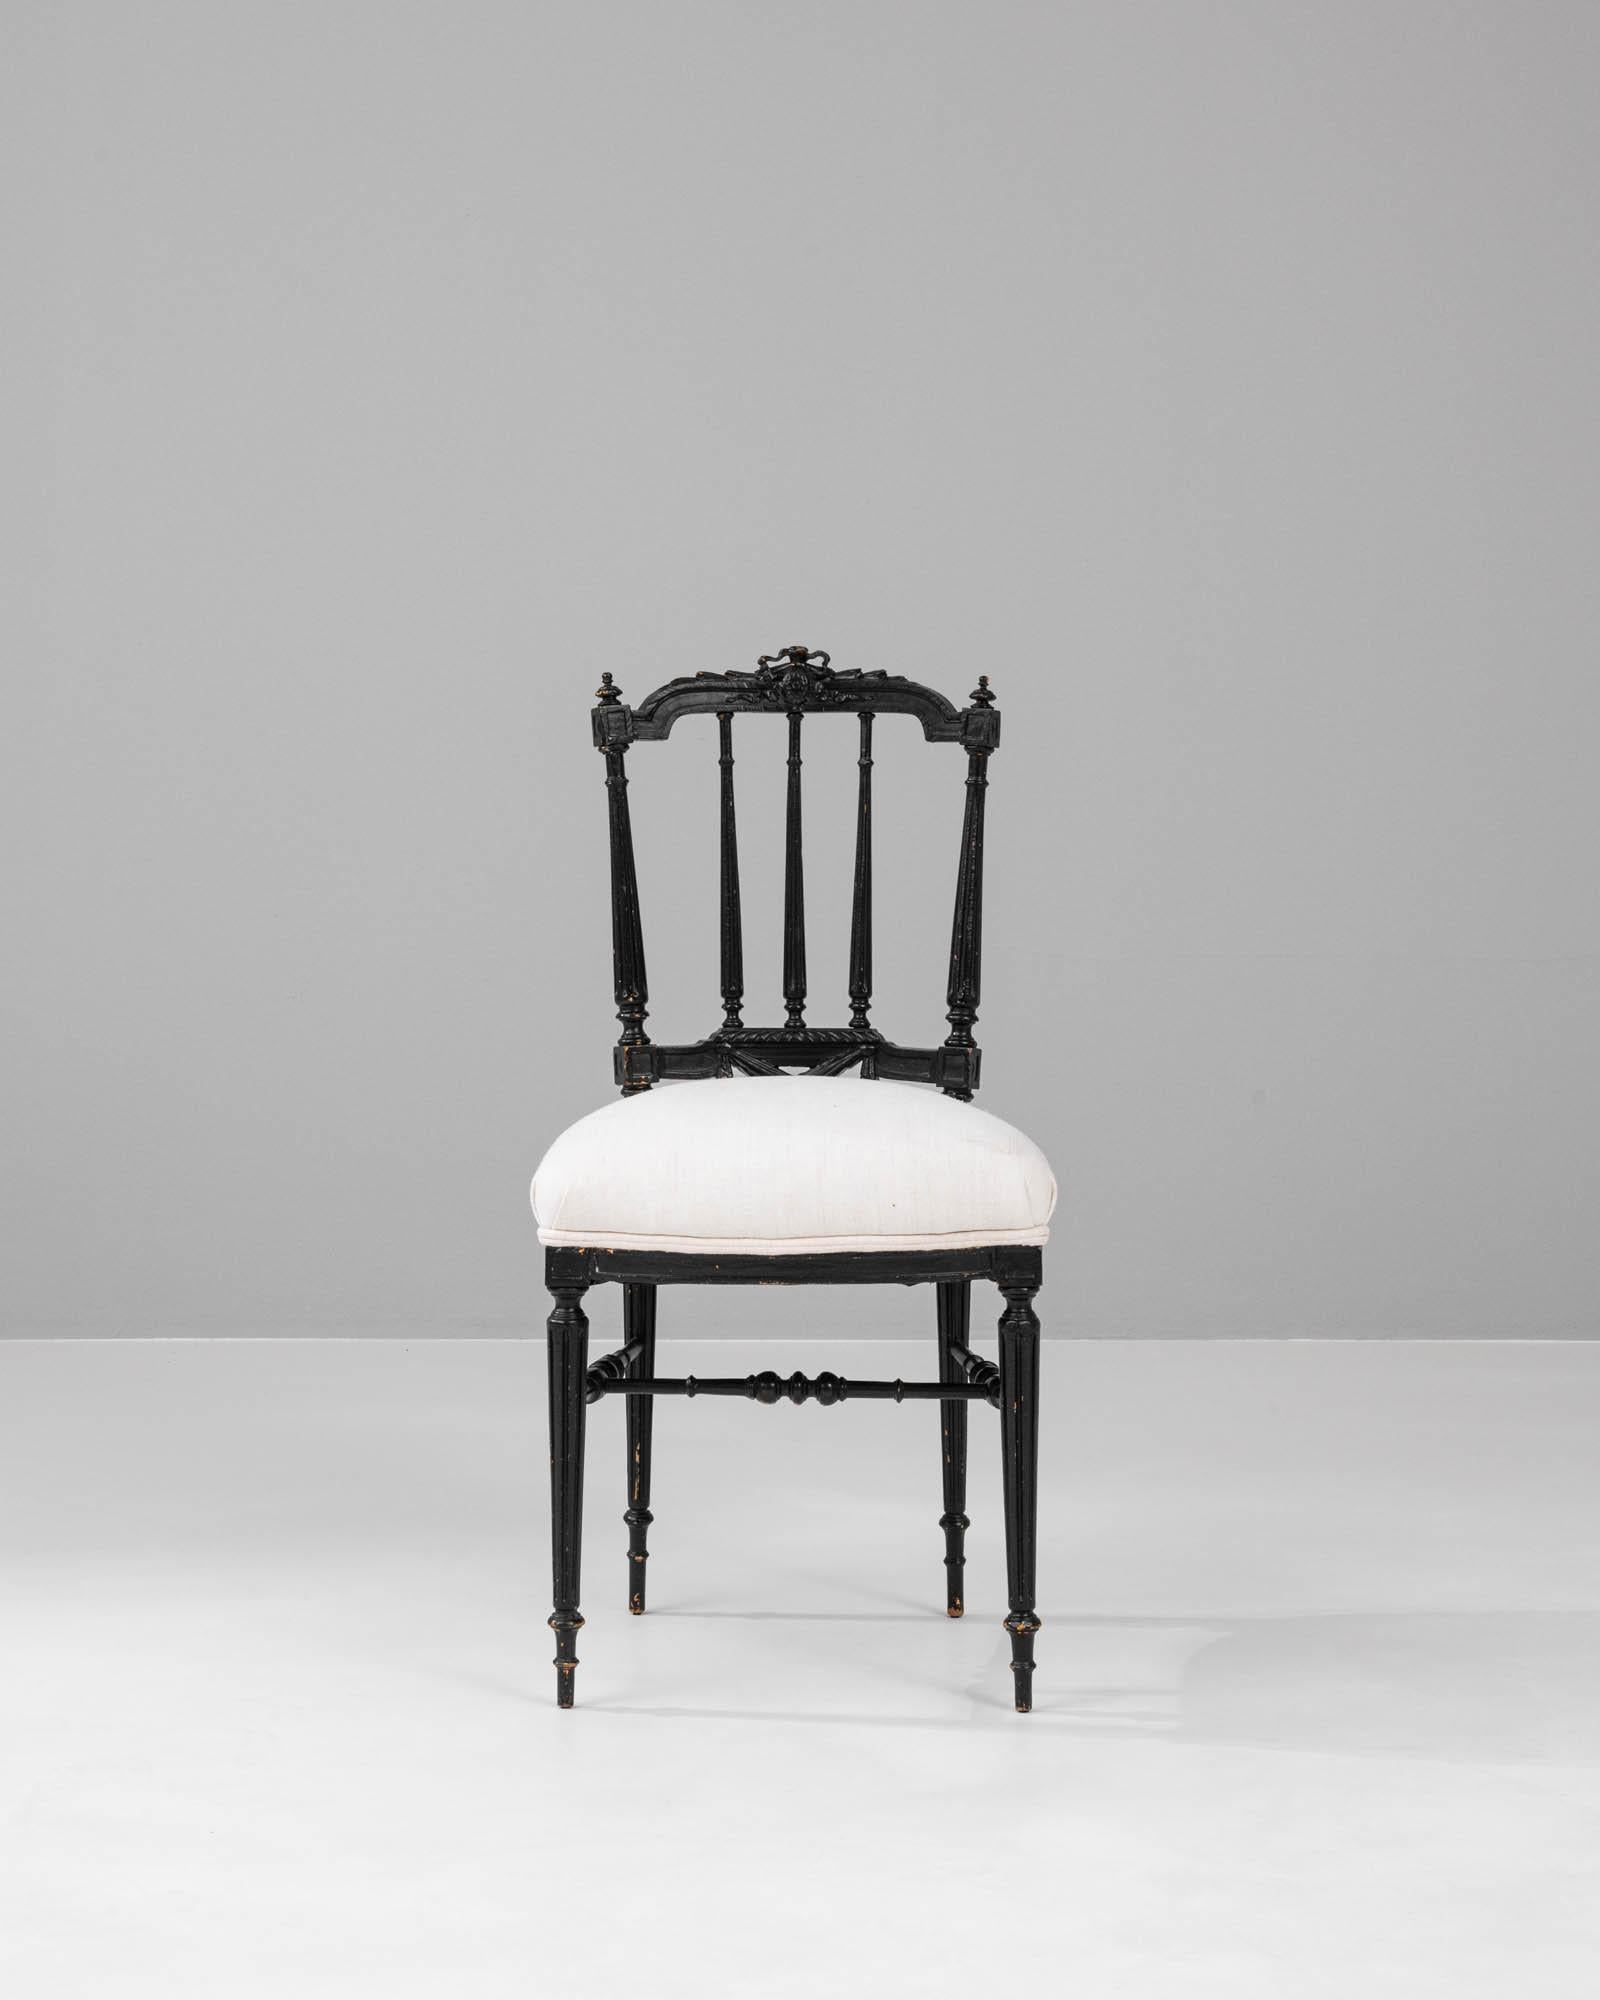 Eleg d'une élégance intemporelle, cette chaise en bois française des années 1880 présente une juxtaposition exquise du charme de l'époque et d'une sensibilité moderne. Le dossier haut de la chaise est ponctué de fuseaux élancés, coiffés de délicats